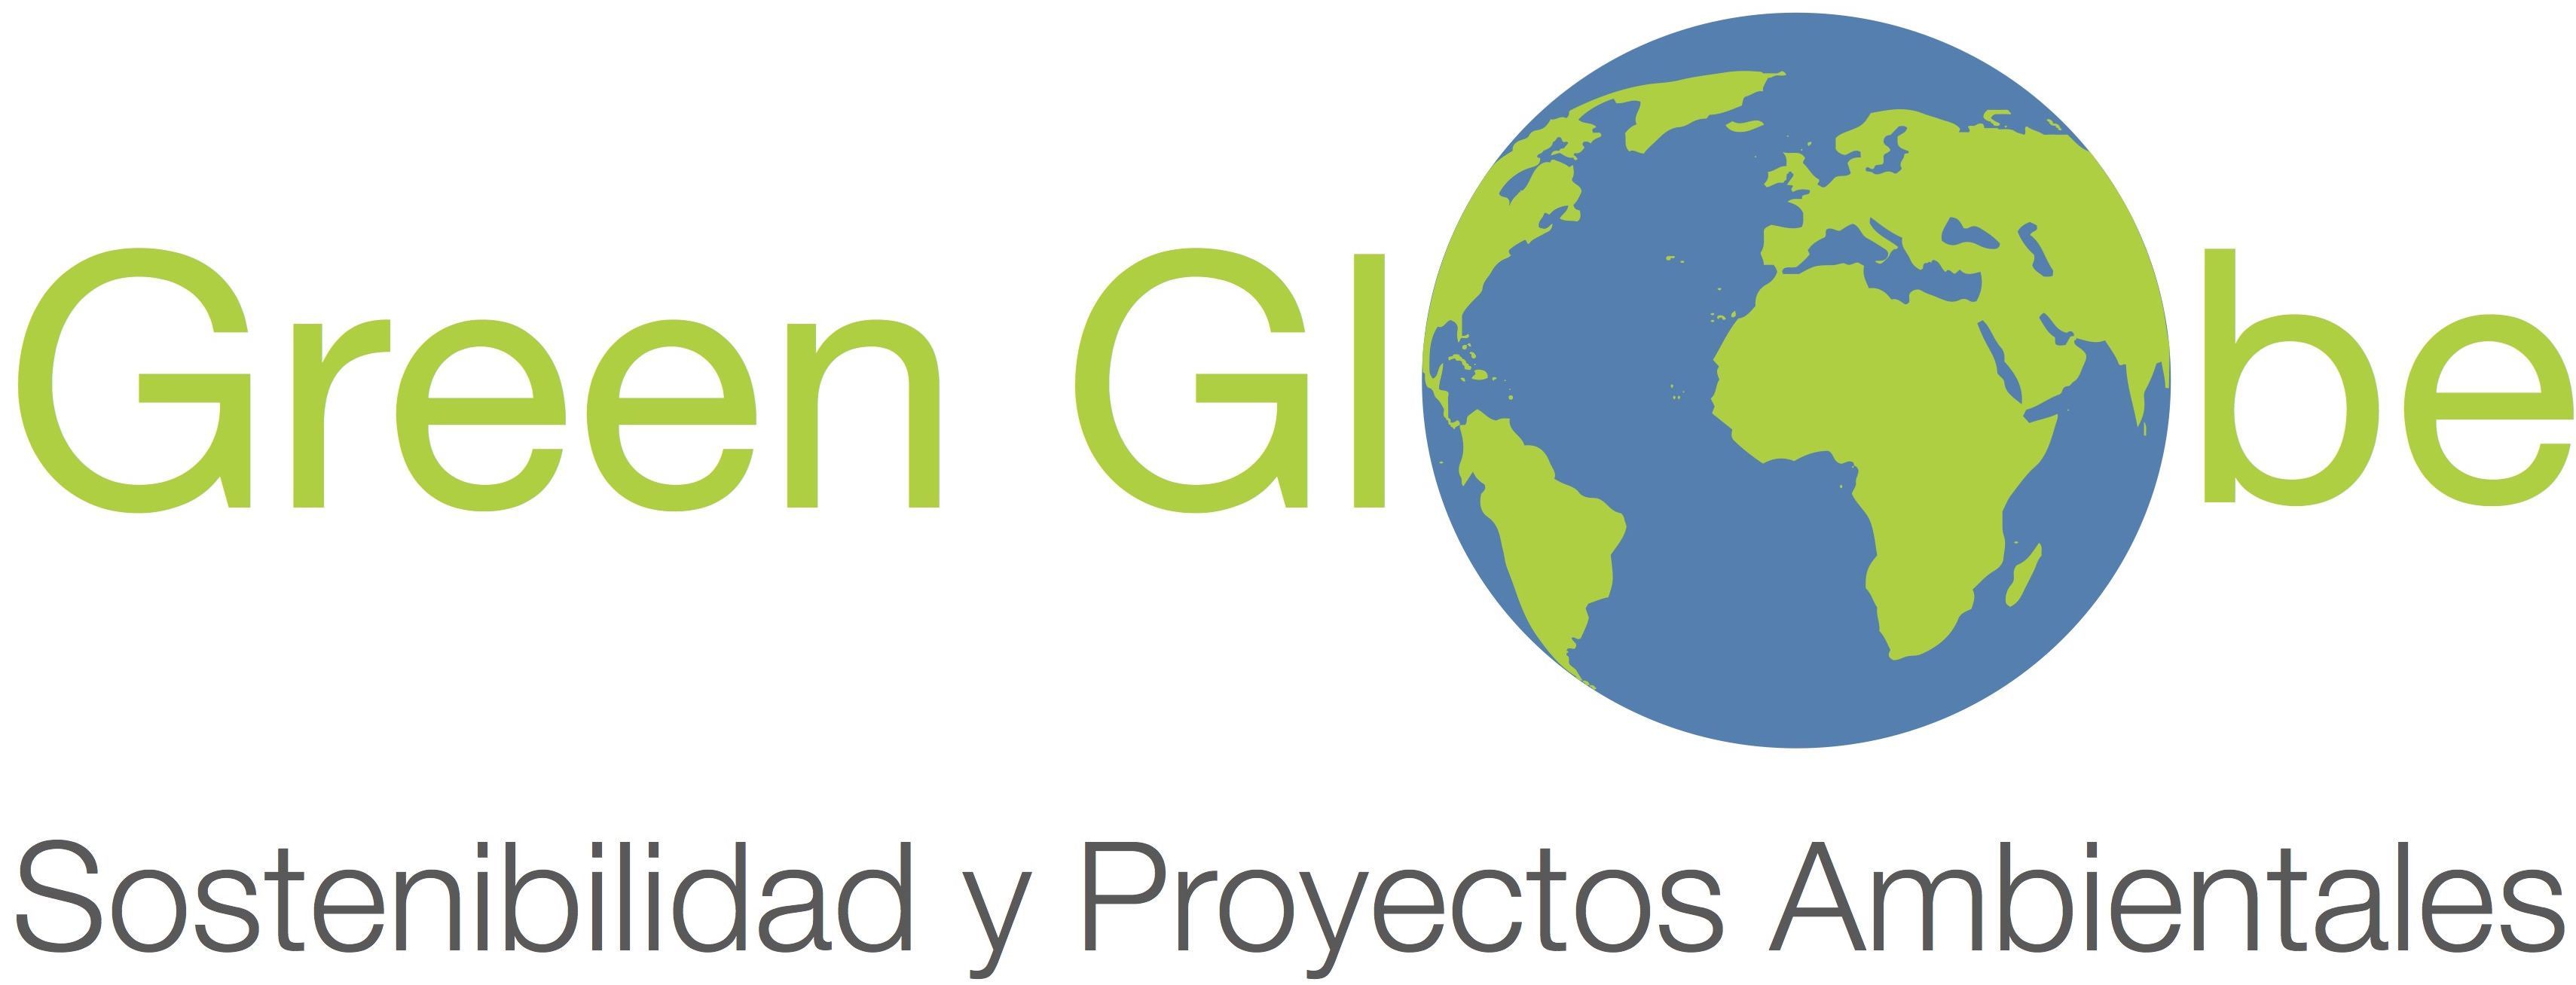 logo-green-globe-jpg